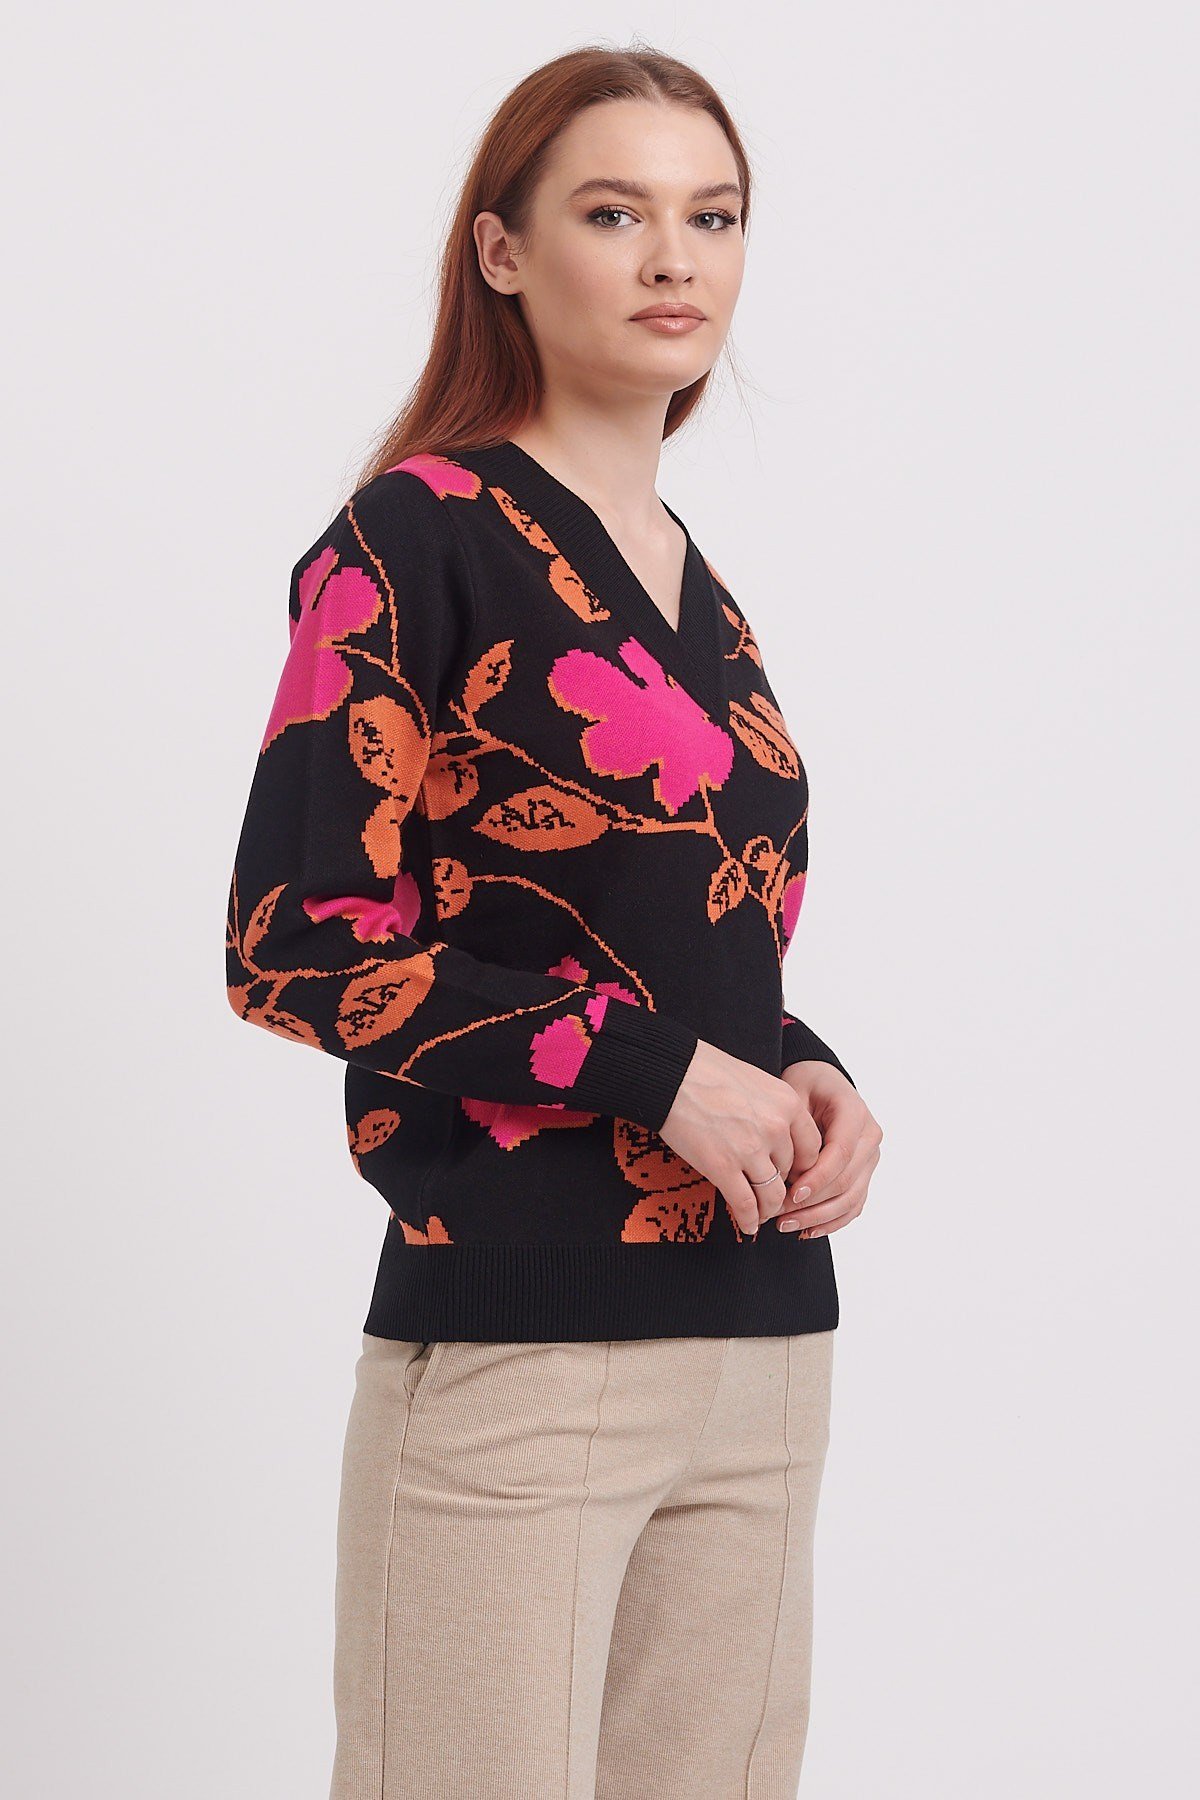 Nihan V-Necked Floral Patterned Knit Sweater Black